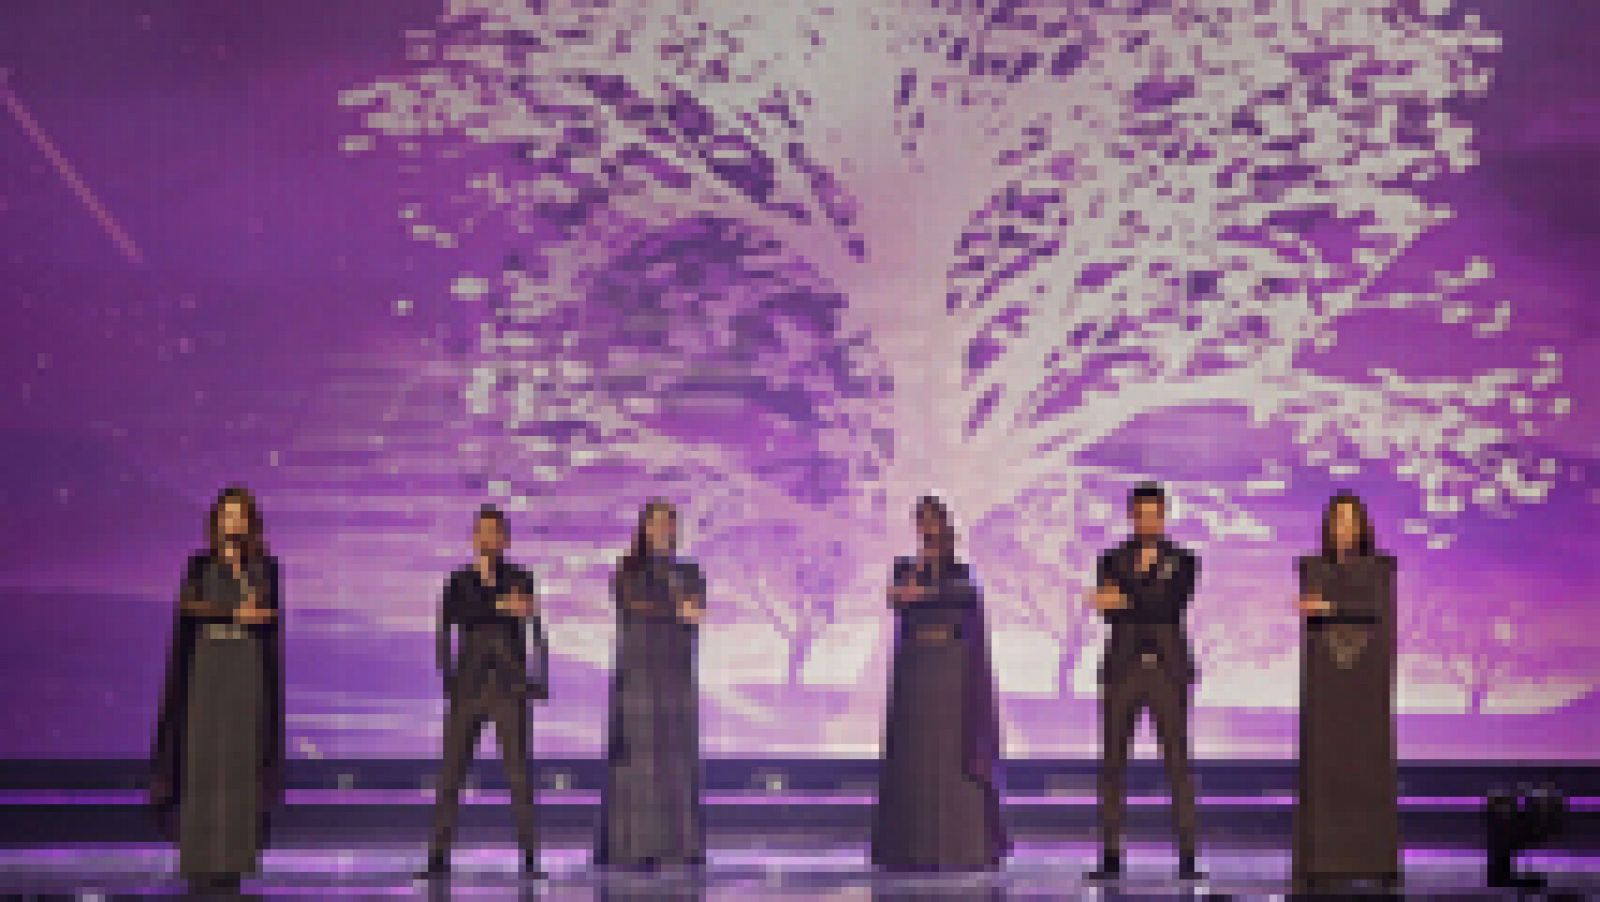 Eurovisión 2015 - Armenia: Genealogy - "Face the shadow"